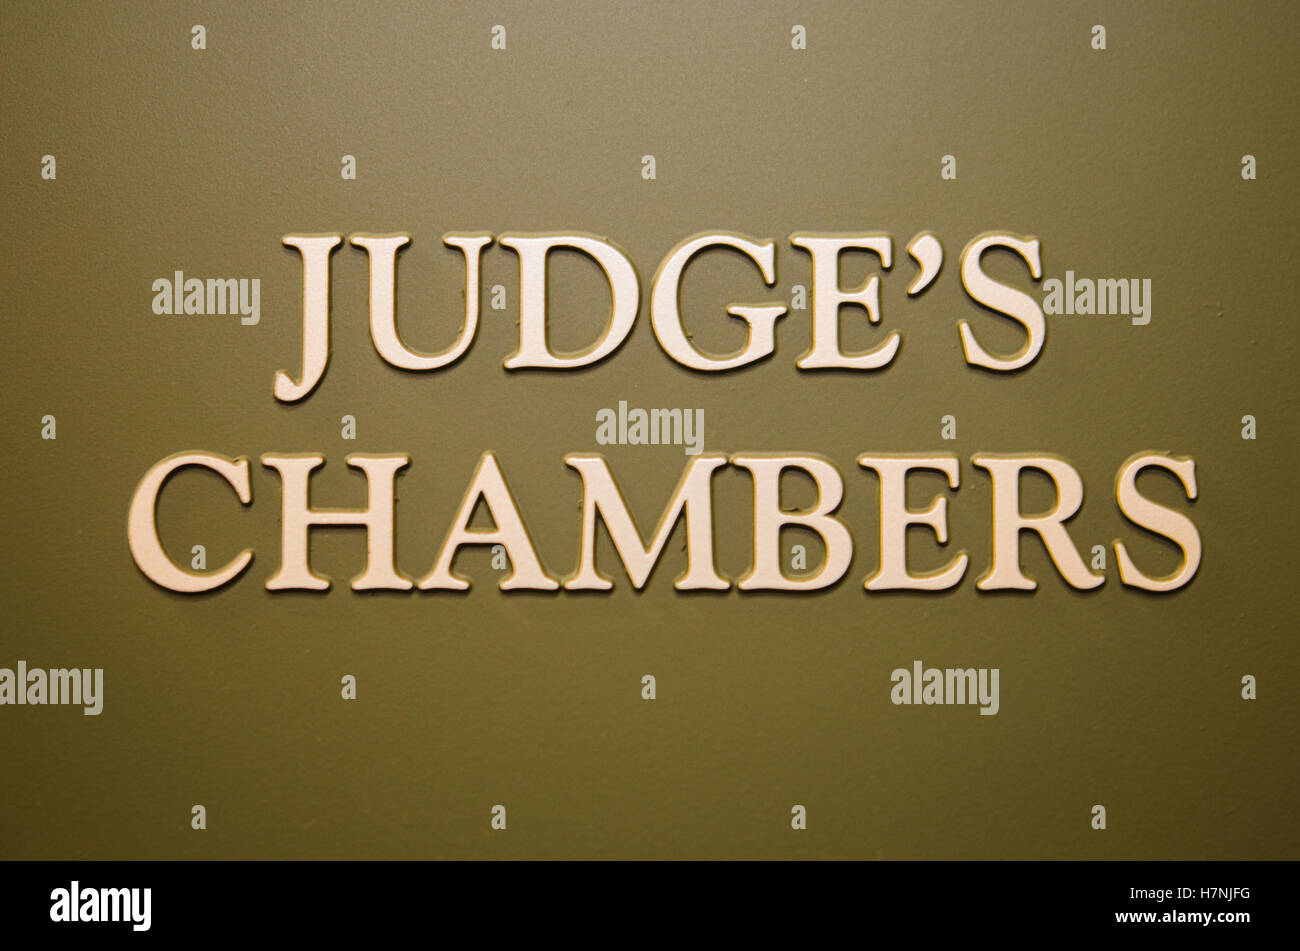 Judge's Chambers sign Stock Photo